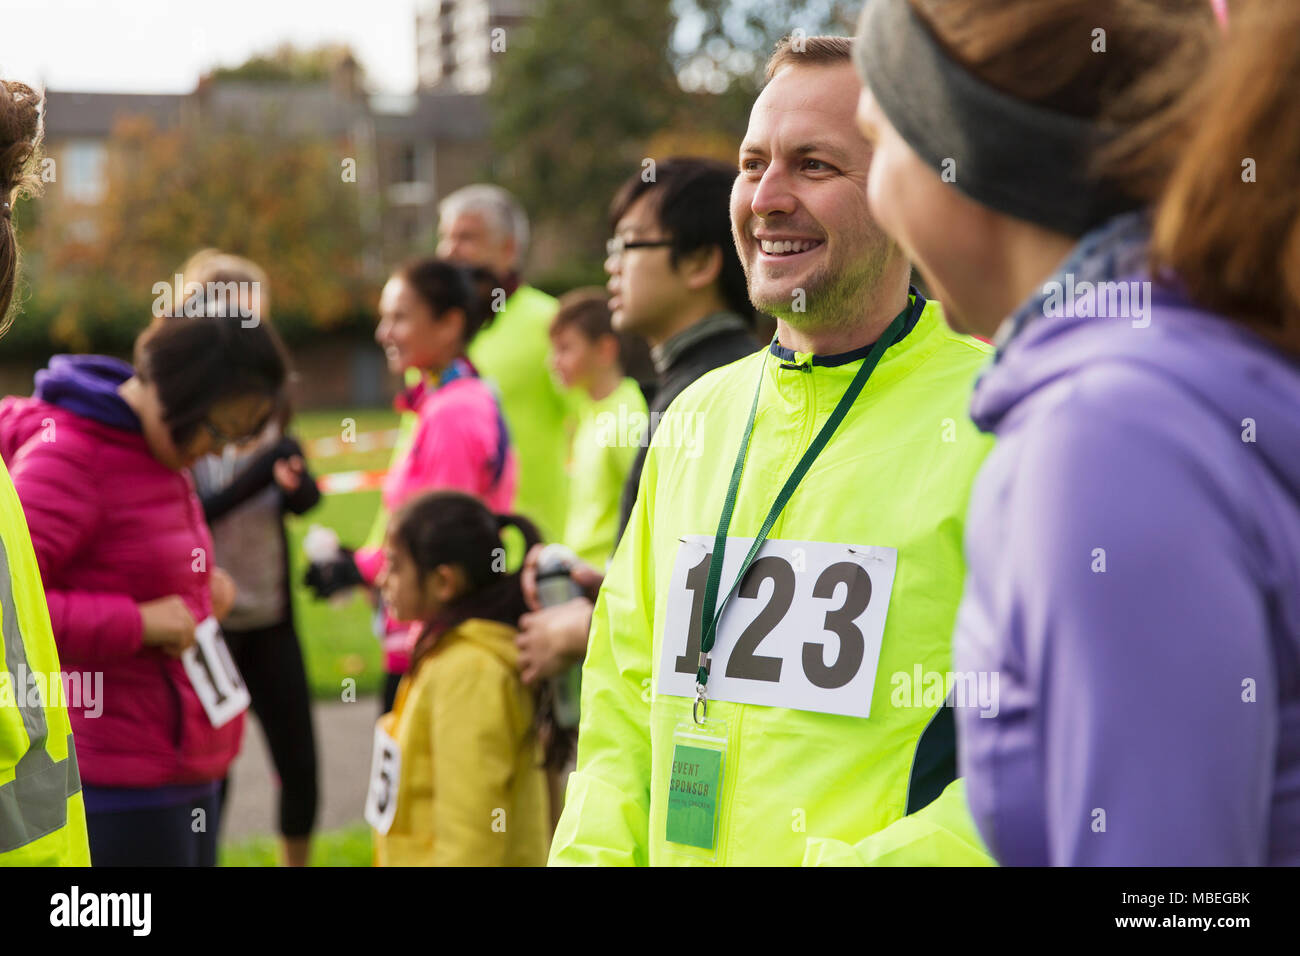 Lächelnd männliche Läufer an Charity Run Stockfoto